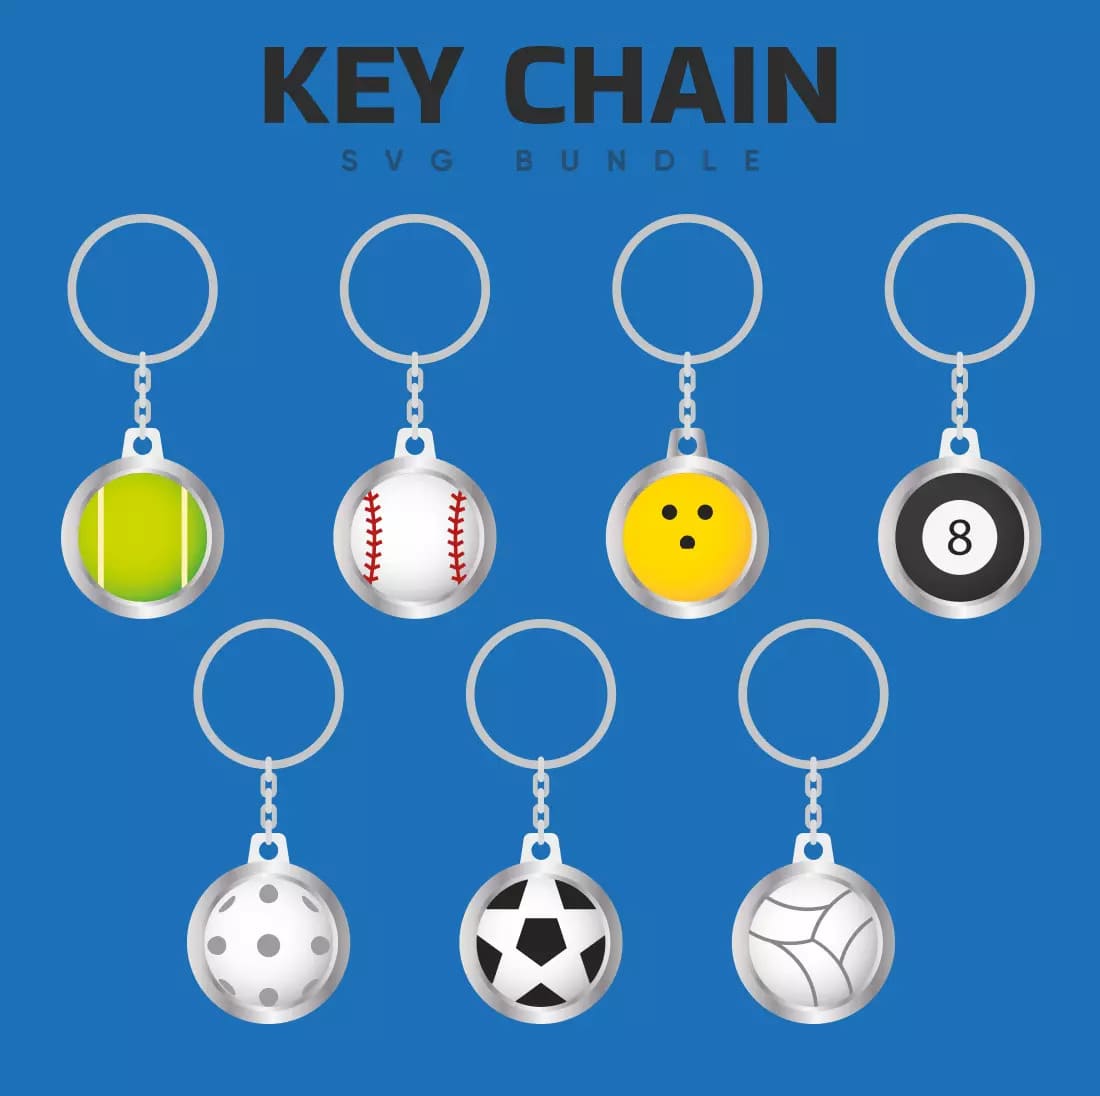 Key Chain SVG Bundle Preview.